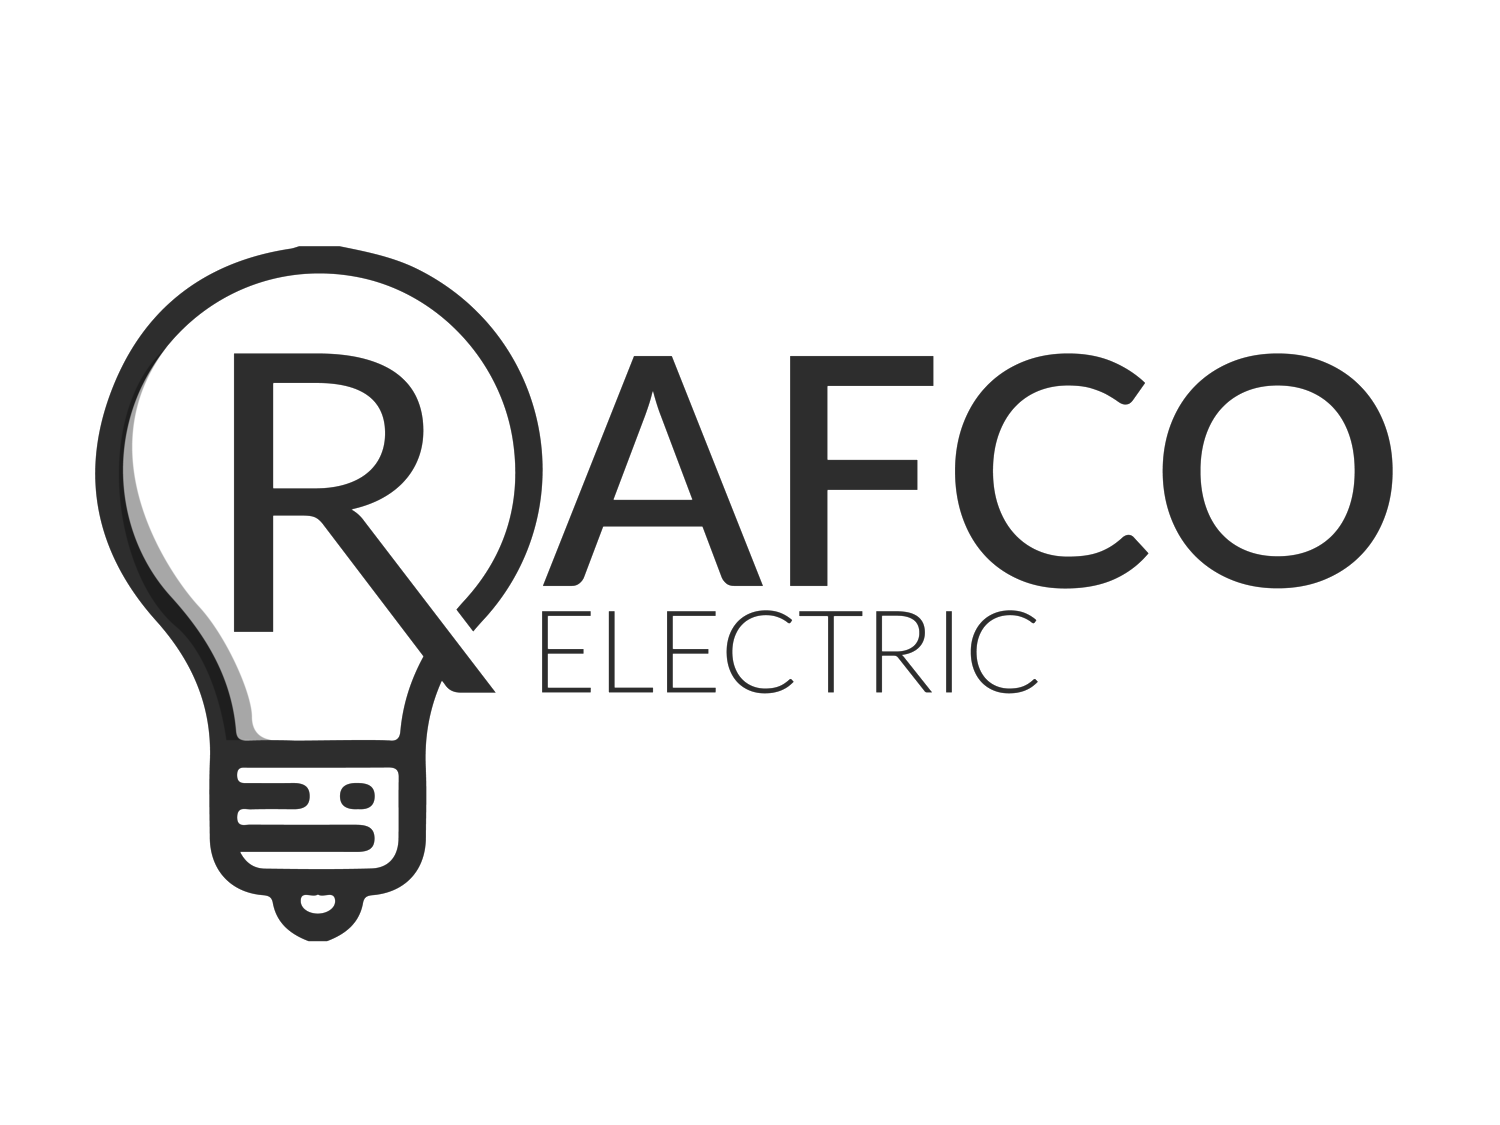 Rafco Electric